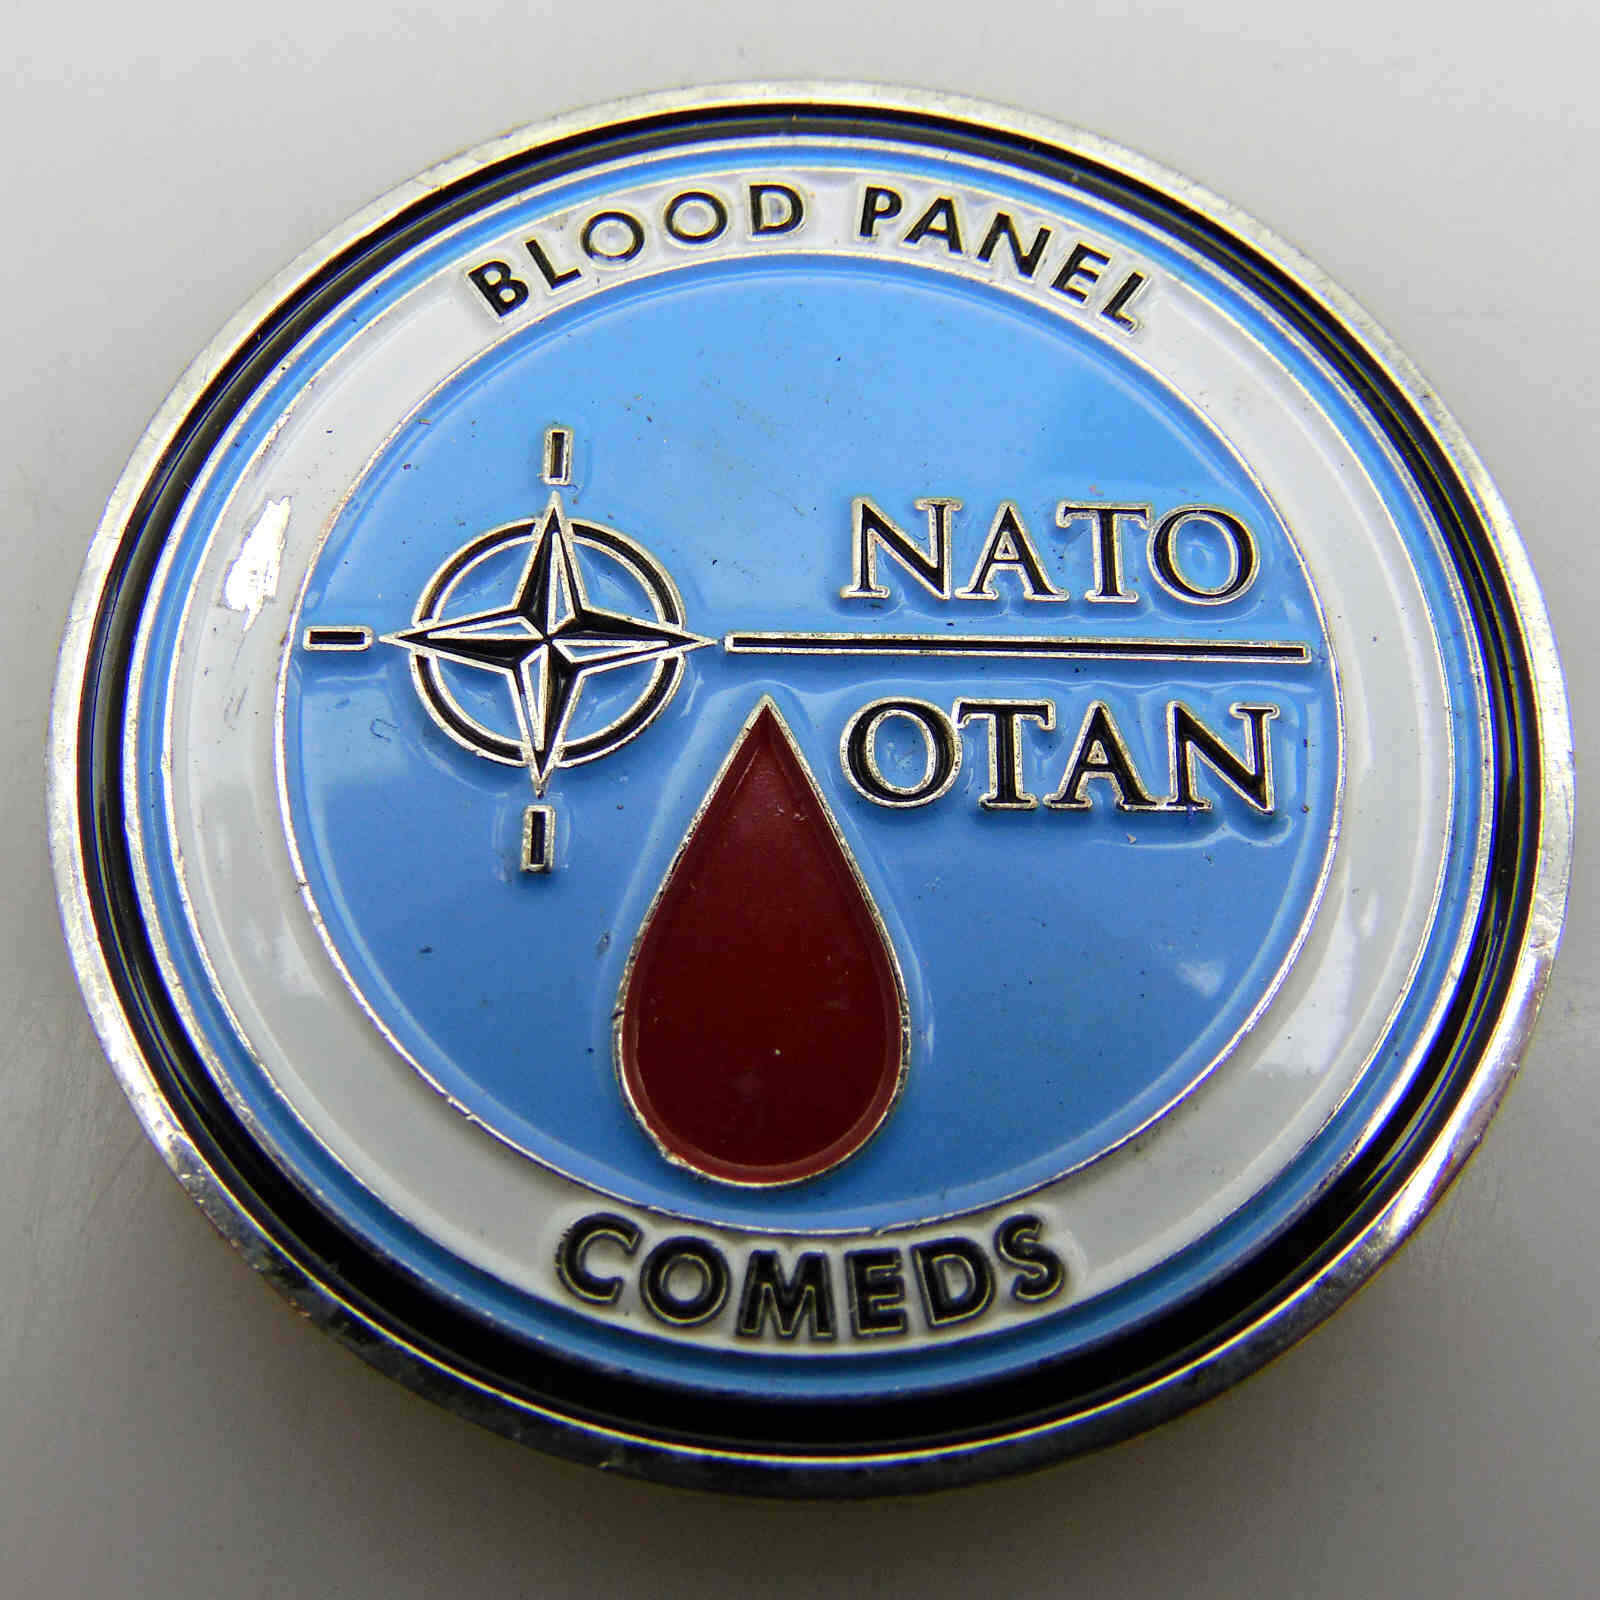 NATO OTAN BLOOD PANEL COMEDS COMEDS CHALLENGE COIN